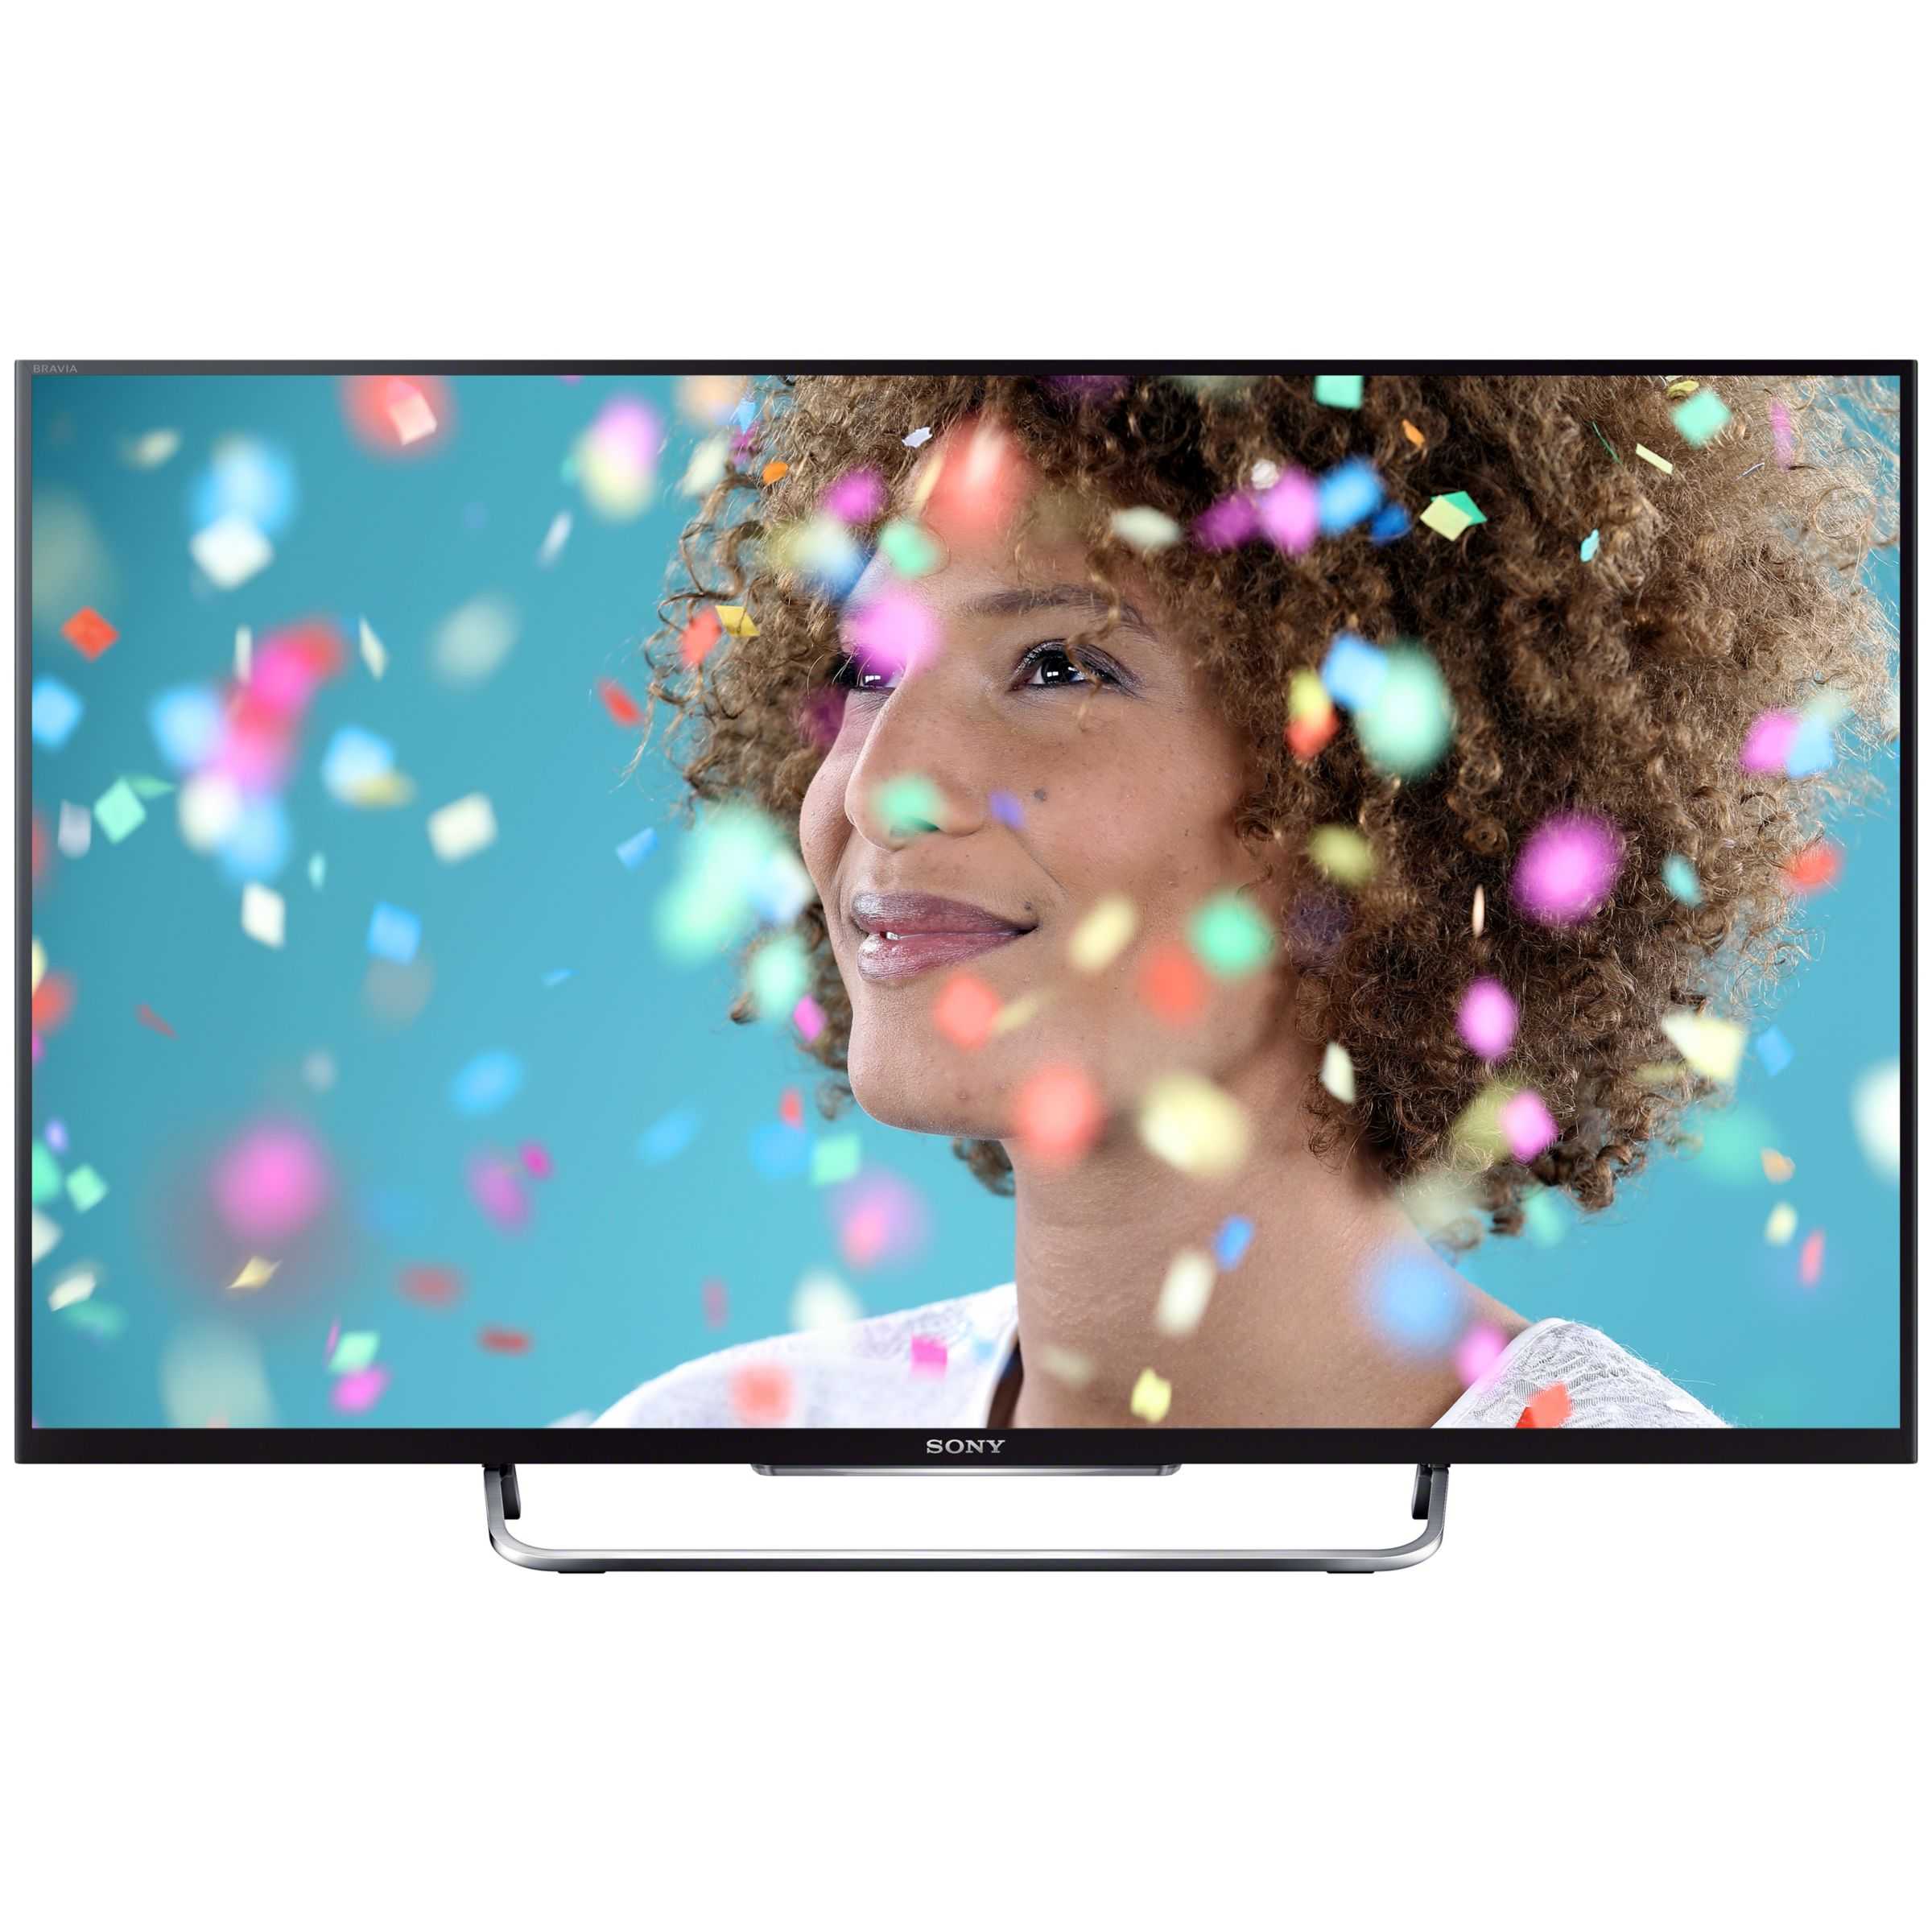 Жк телевизор 42" sony kdl-42w817b — купить, цена и характеристики, отзывы